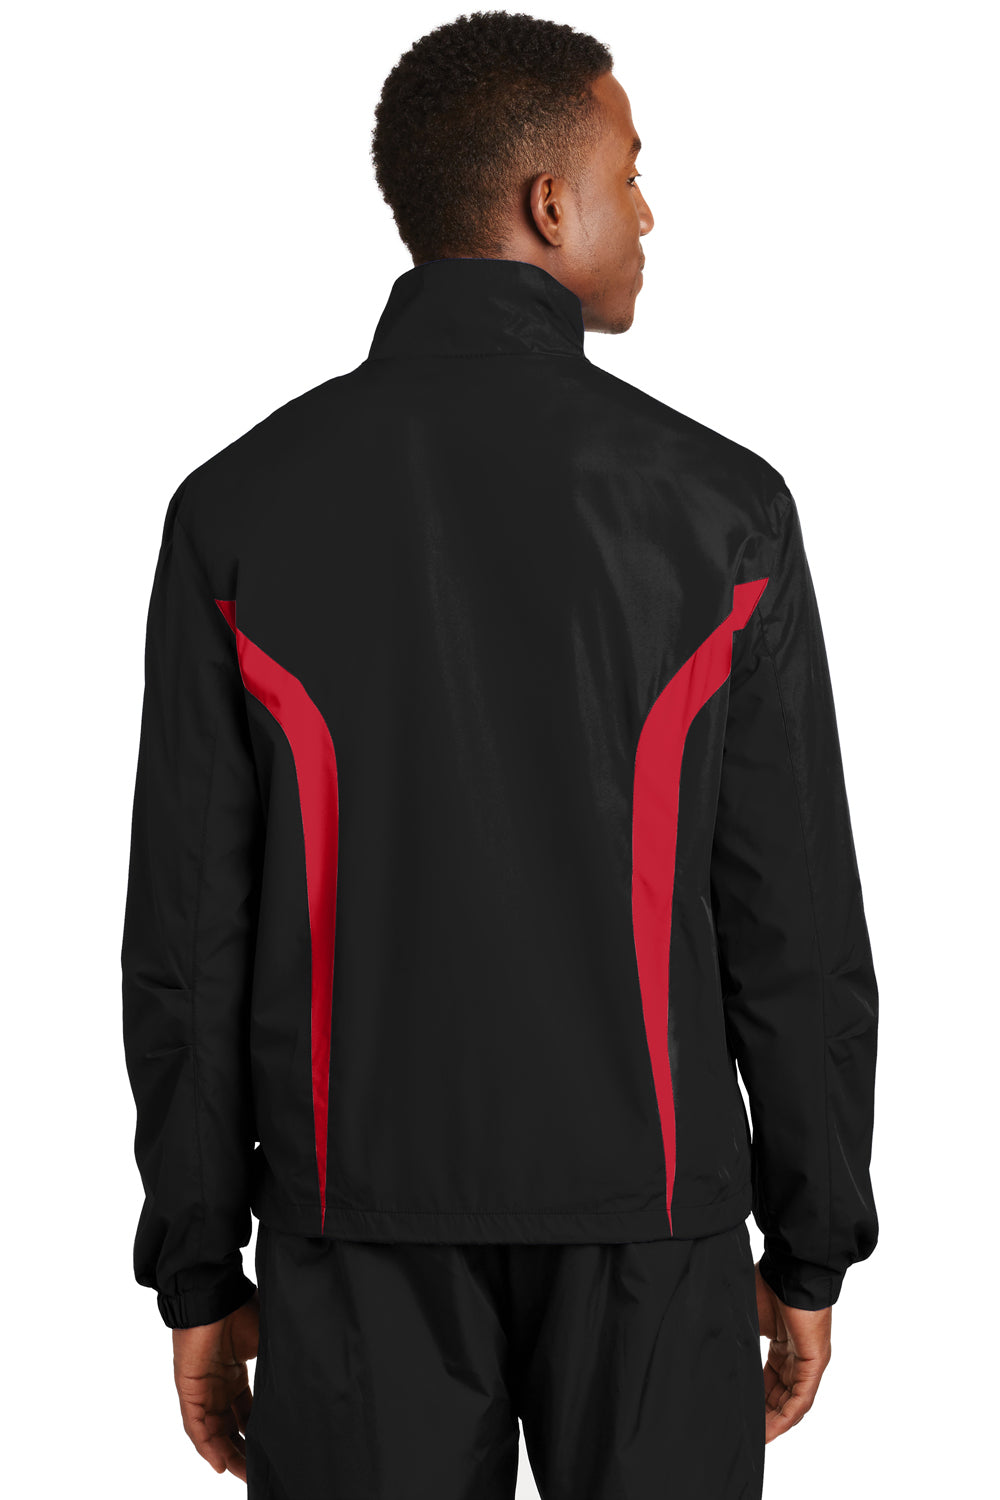 Sport-Tek JST60 Mens Water Resistant Full Zip Jacket Black/Red Back